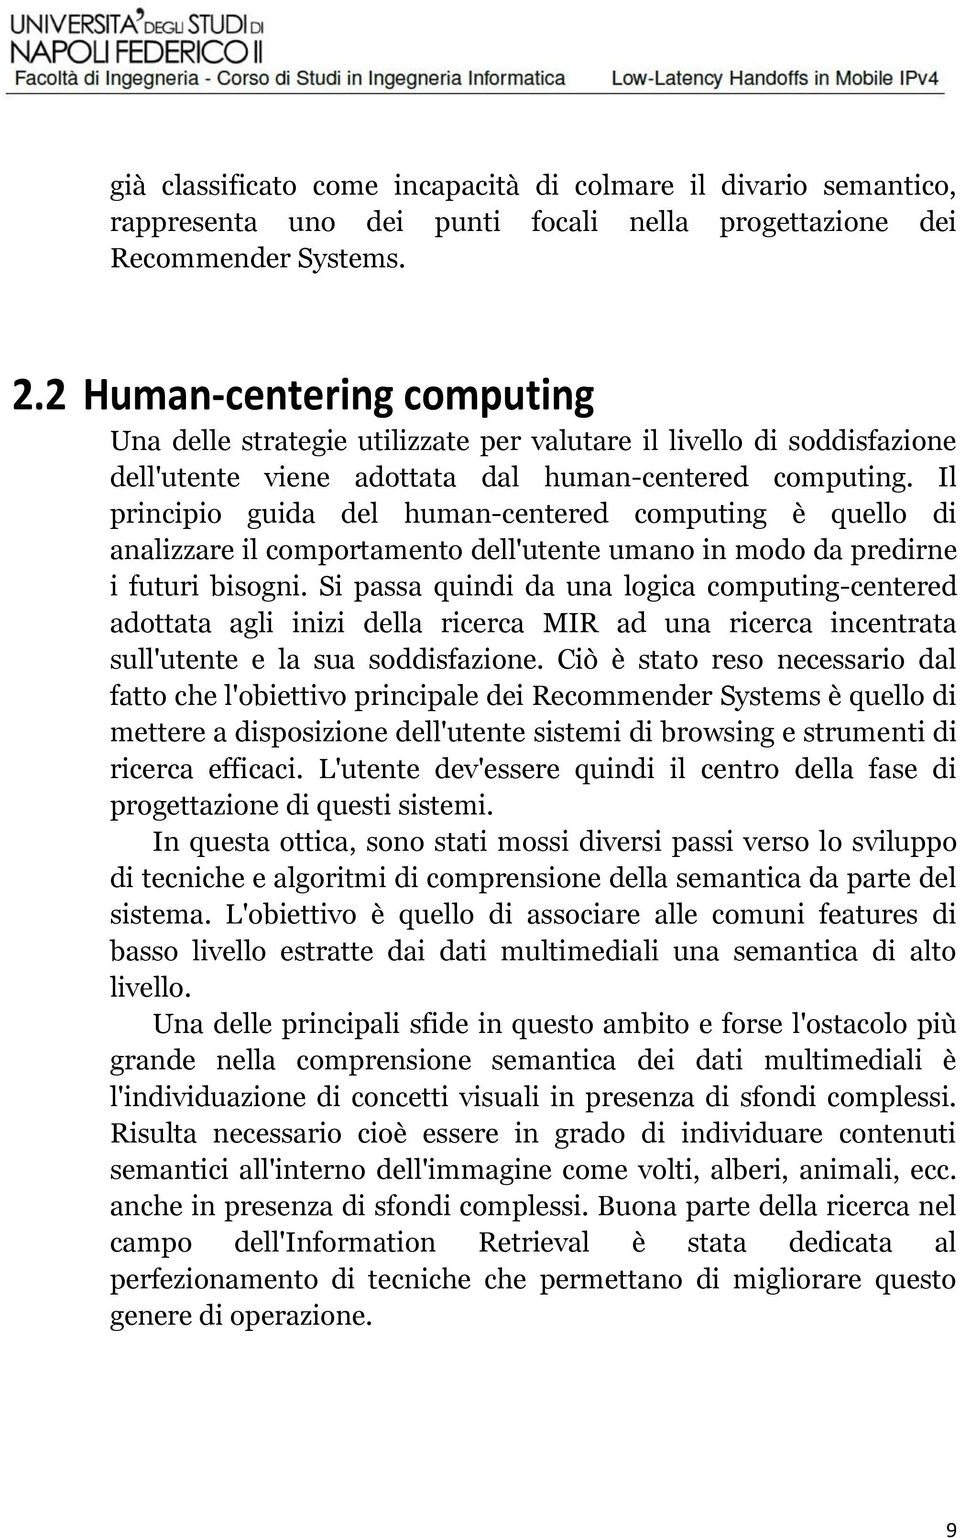 Il principio guida del human-centered computing è quello di analizzare il comportamento dell'utente umano in modo da predirne i futuri bisogni.